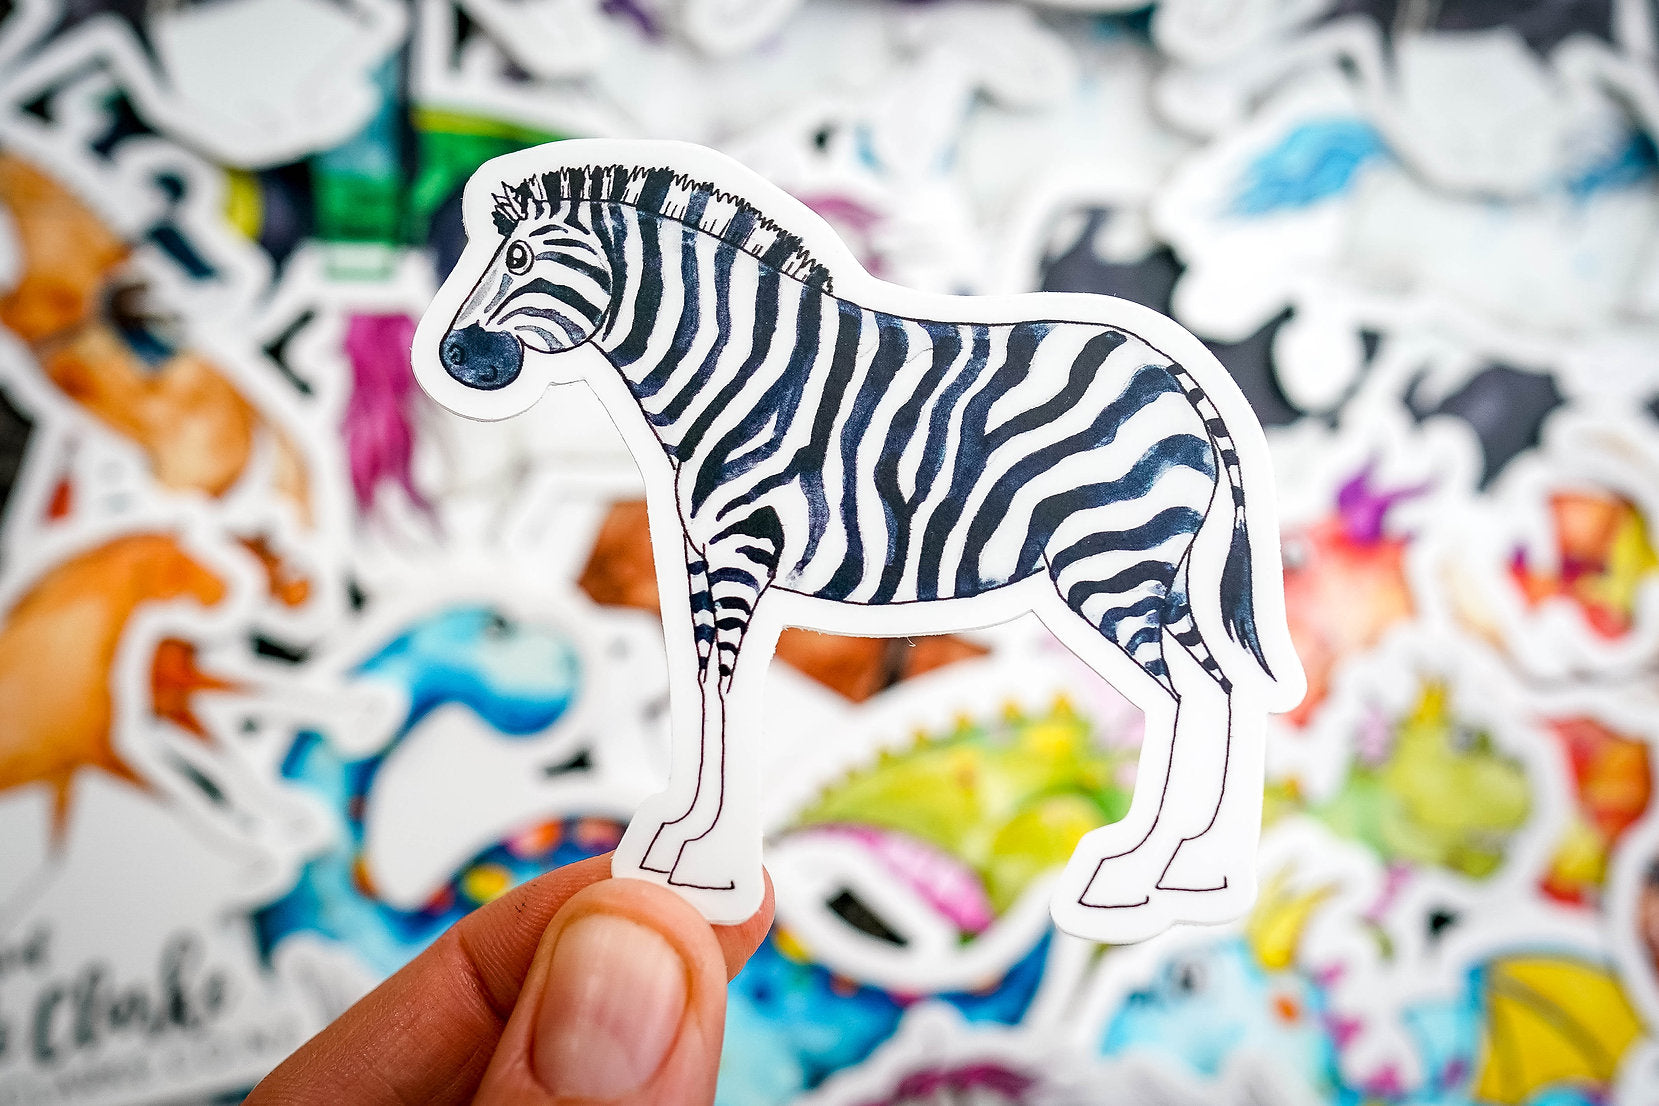 Zebra - Vinyl Sticker